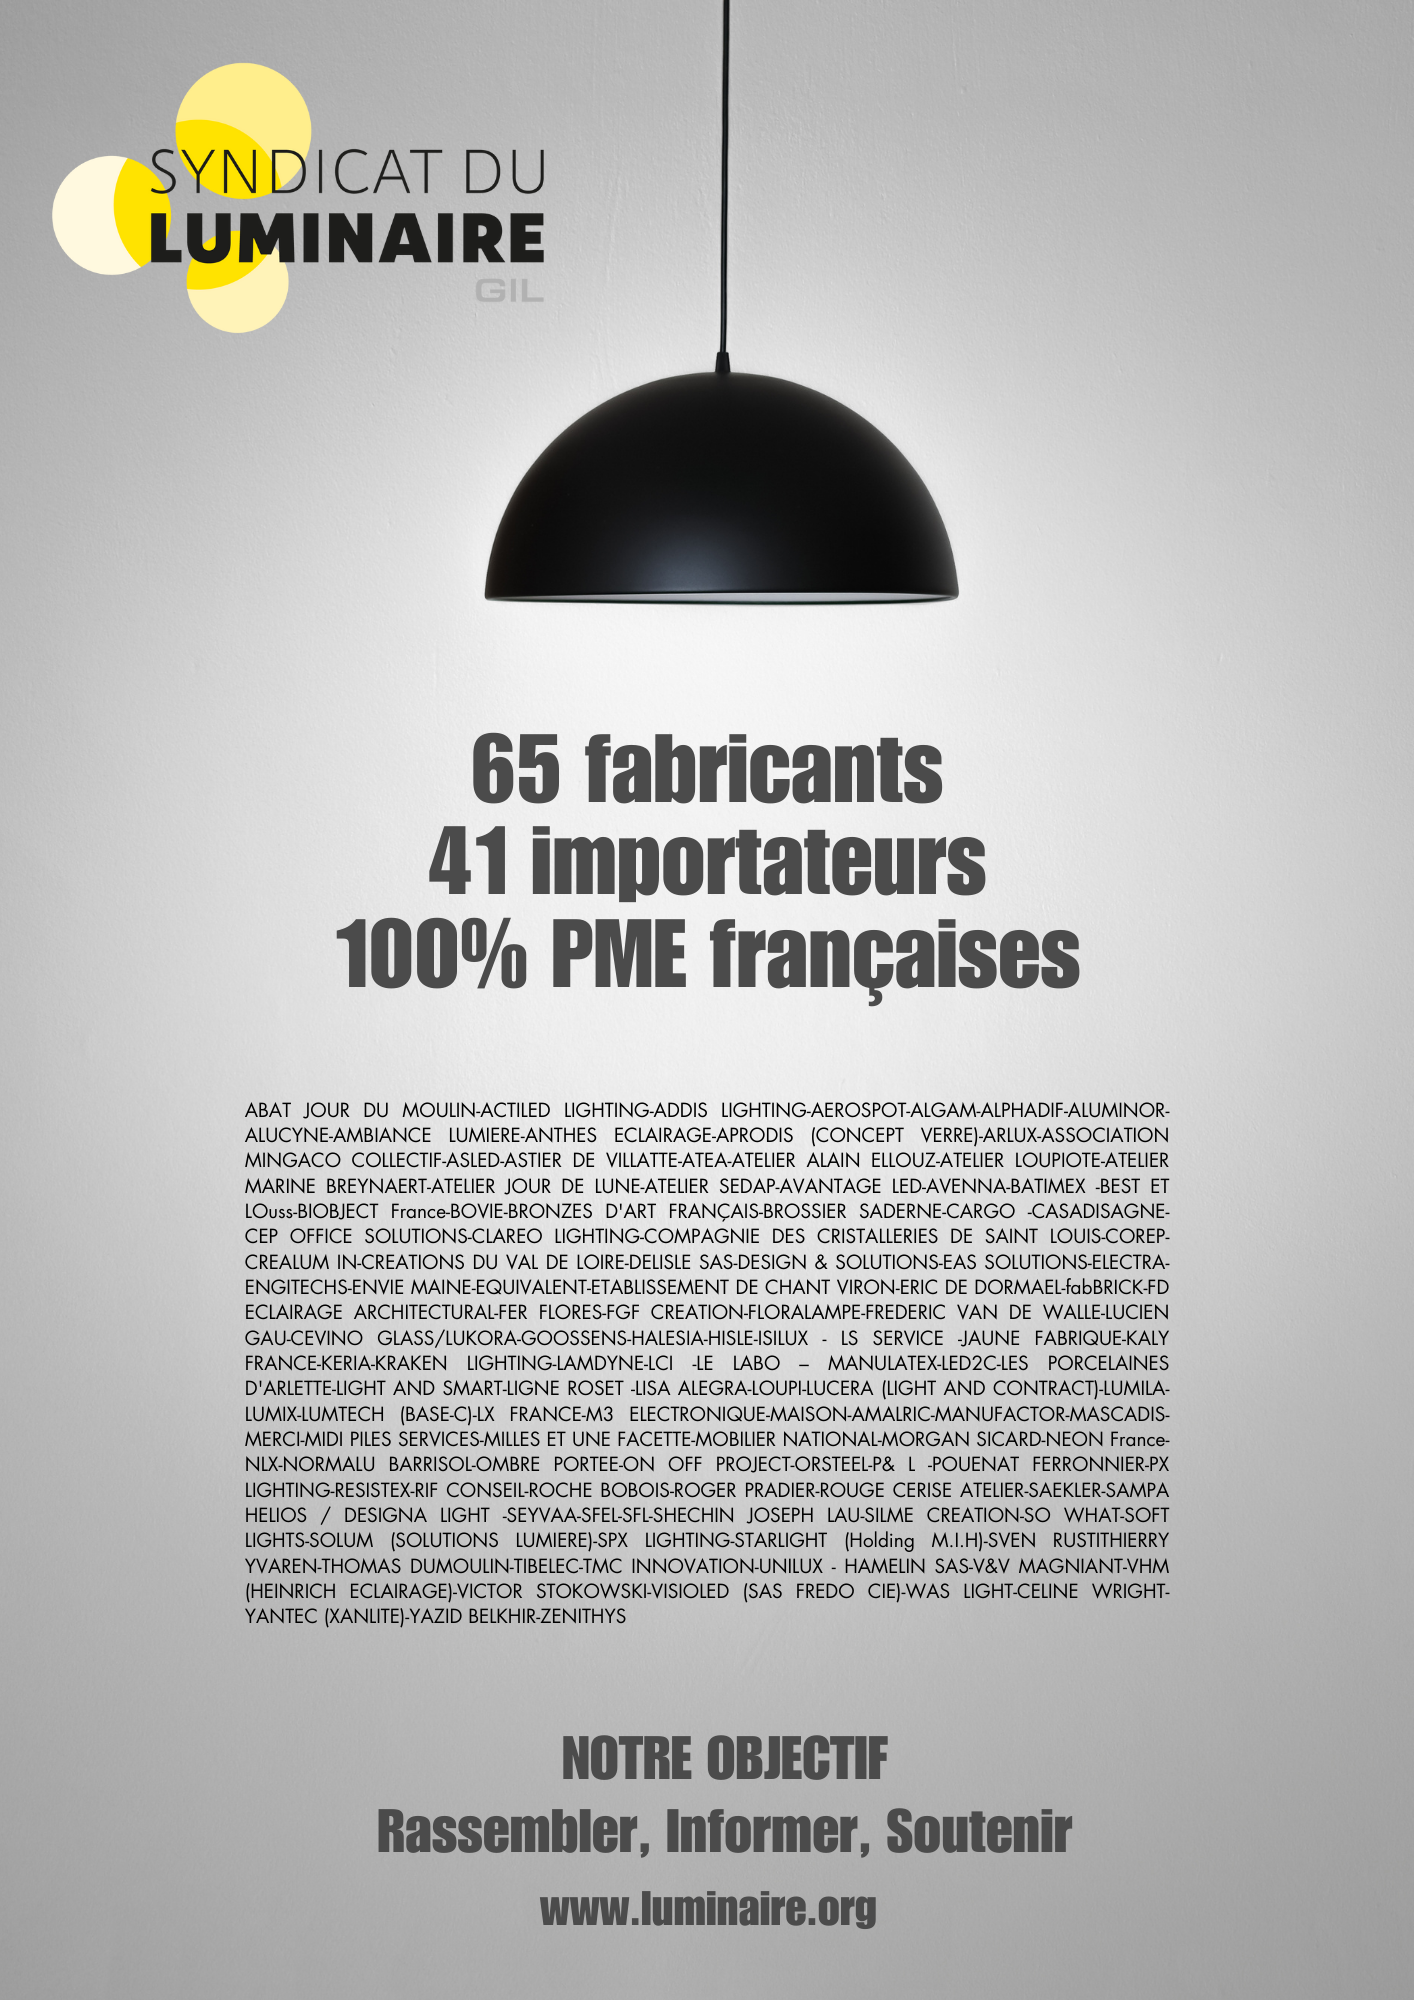 Le Syndicat du Luminaire : 100% PME françaises